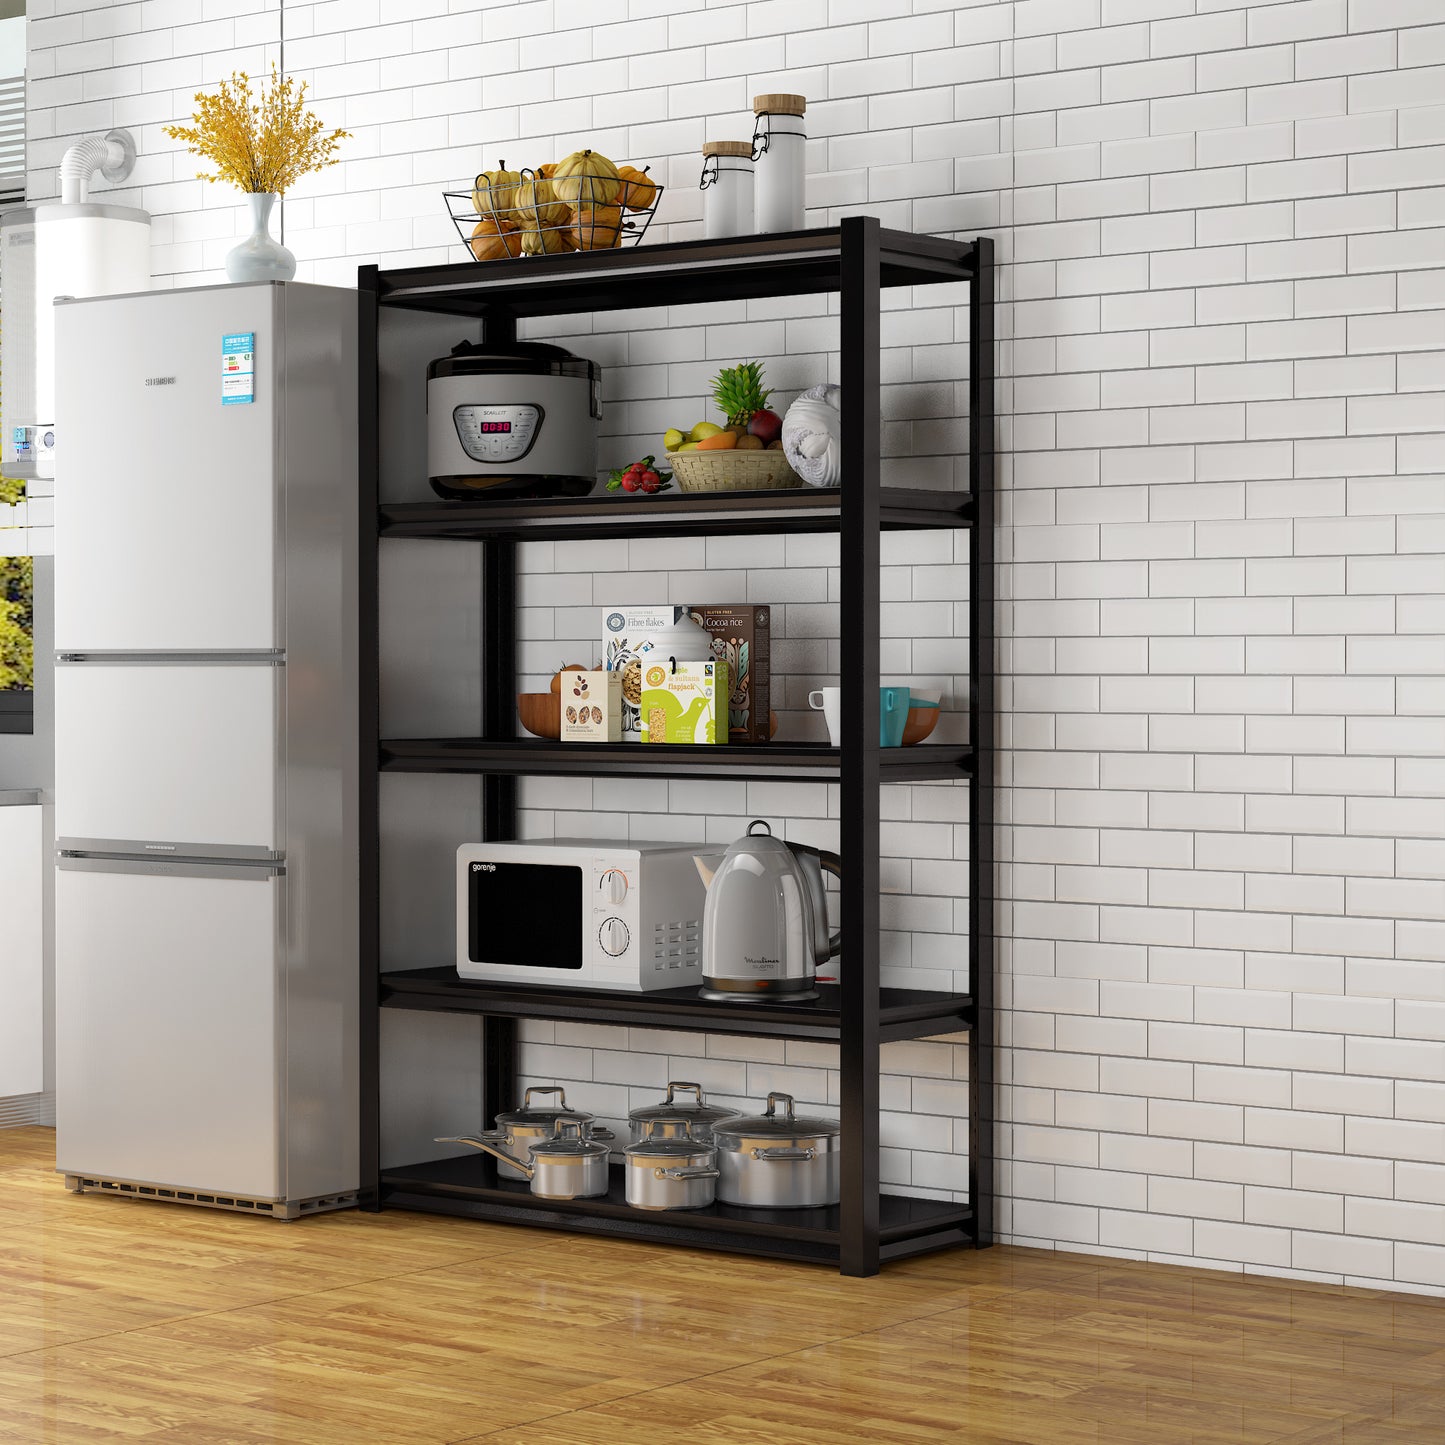 Adjustable 5 tier metal shelf, living room, bedroom, kitchen, garage, tool room